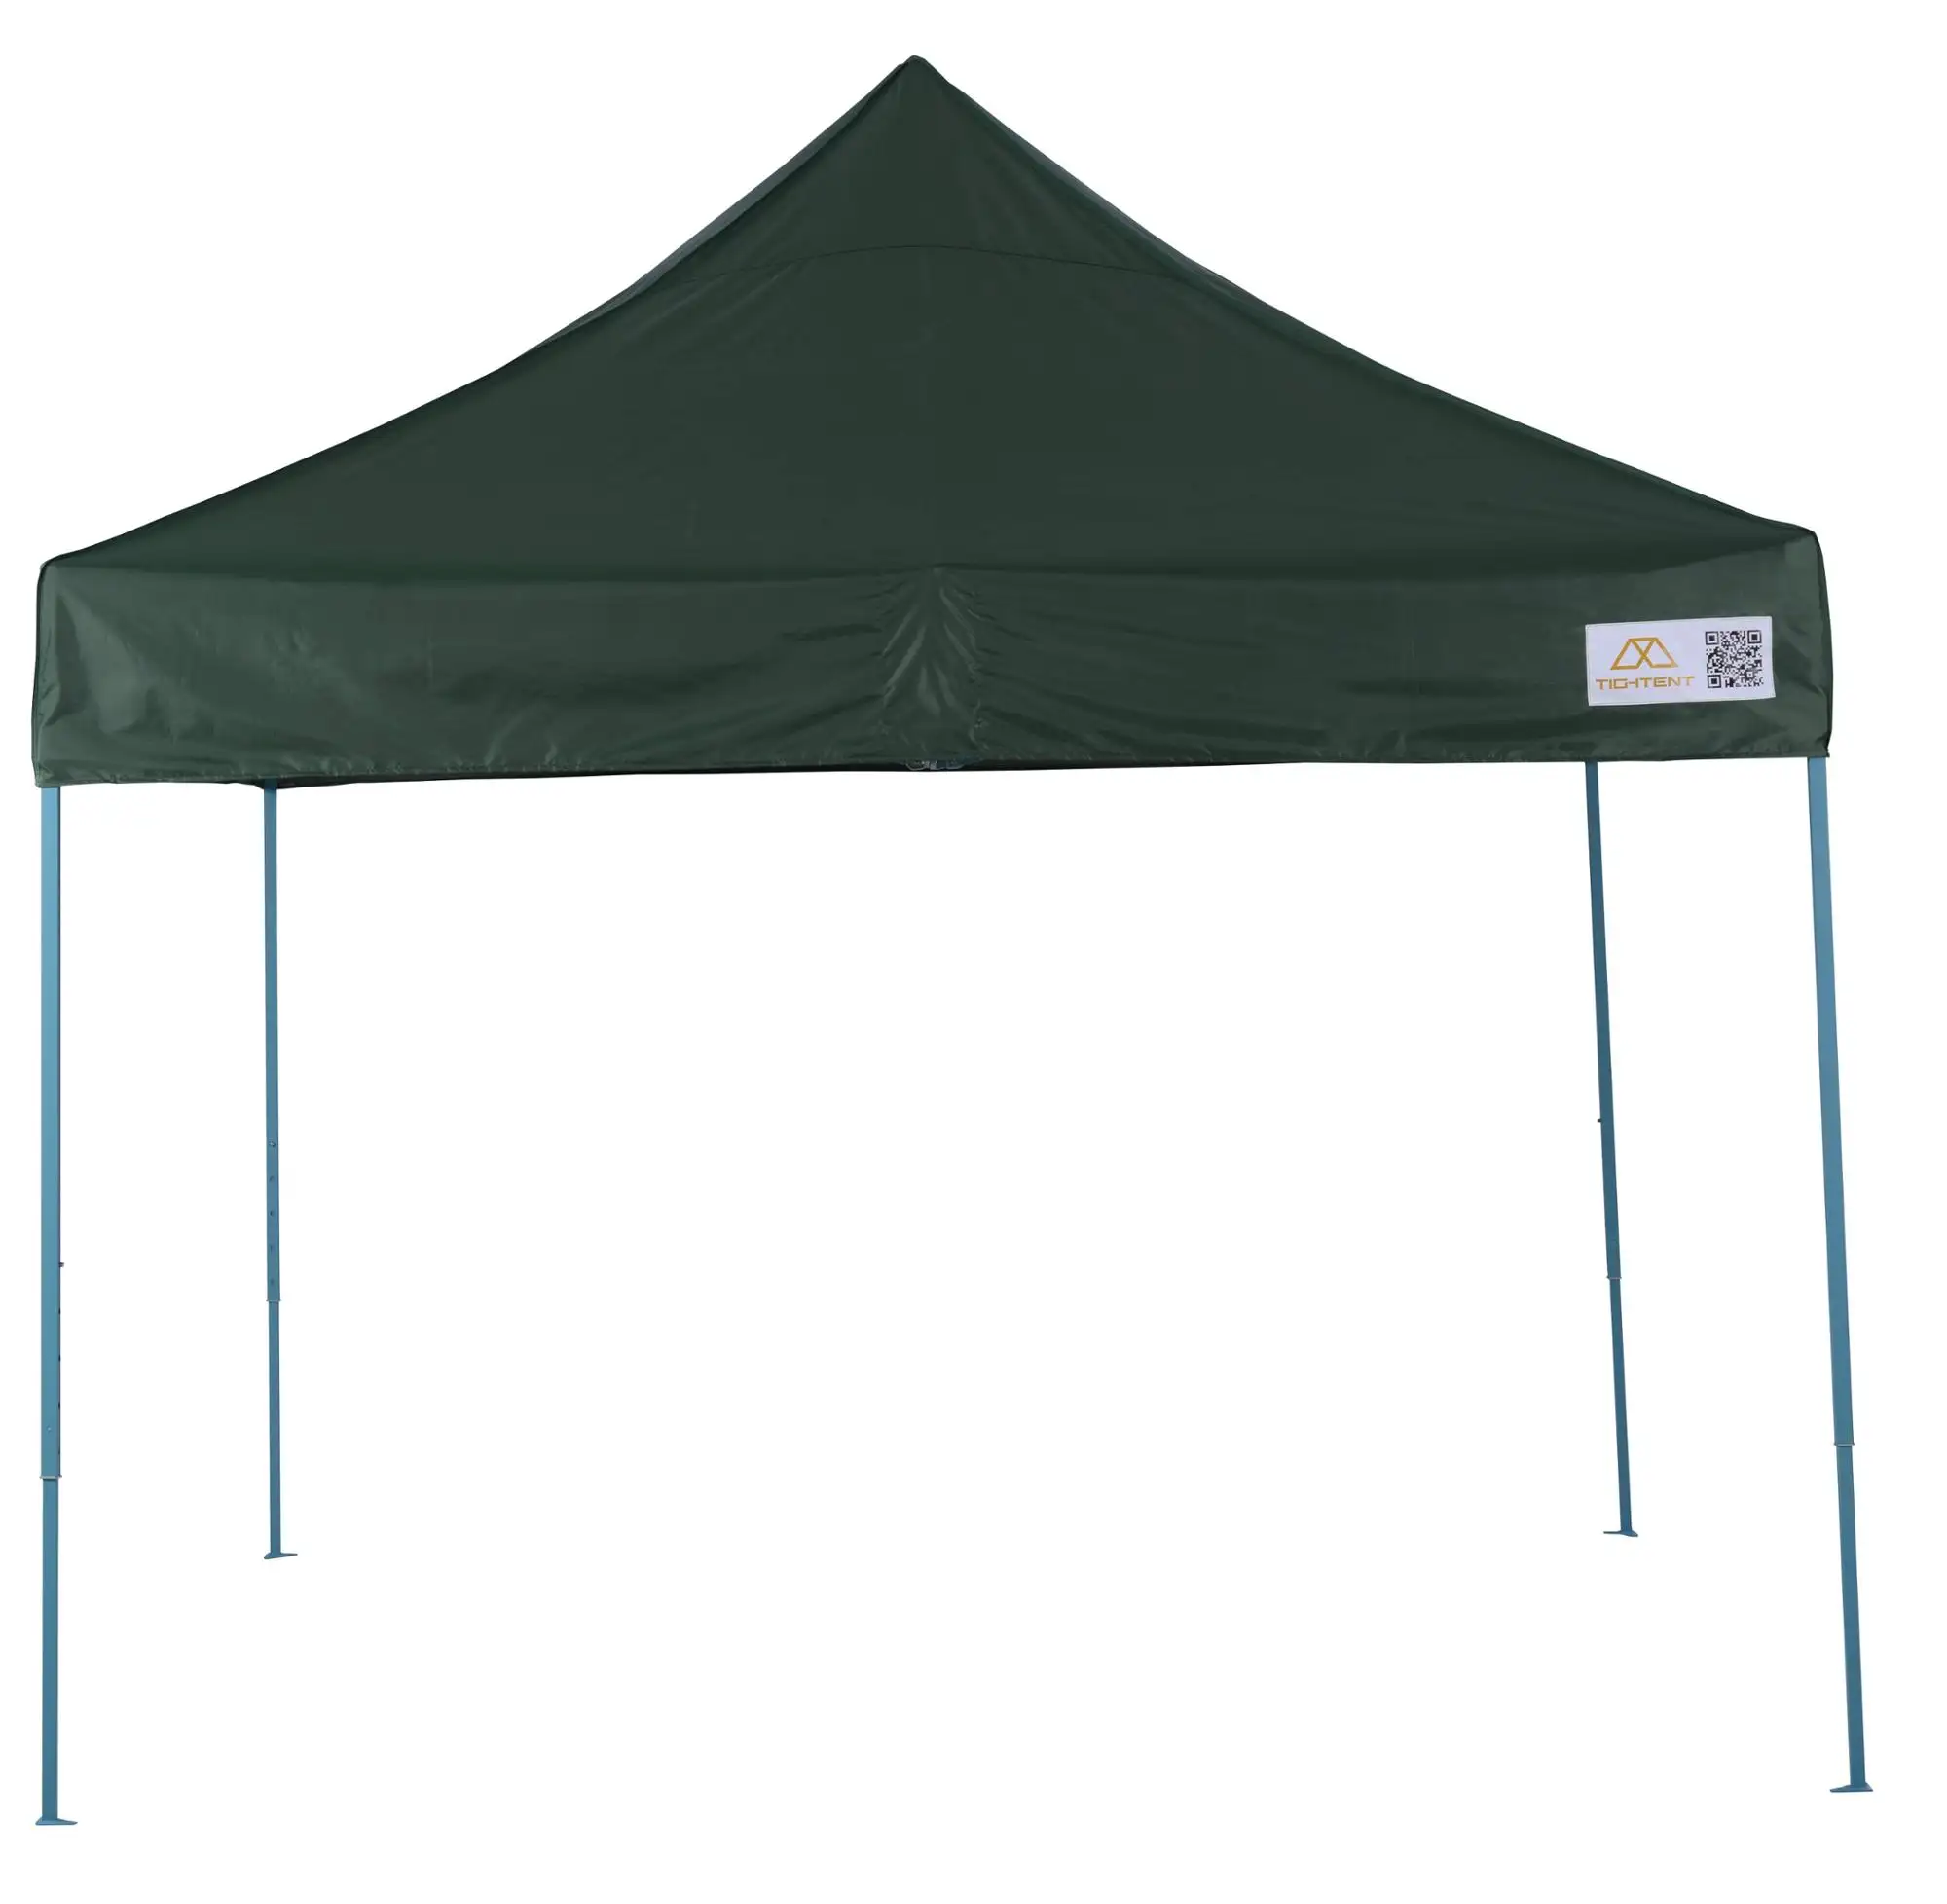 3x3 modern katlanır güneş koruma çalışmalar kamp açık çadır, 3X3m gazebo bahçe hafif geri çekilebilir gölgelik çadır tasarım